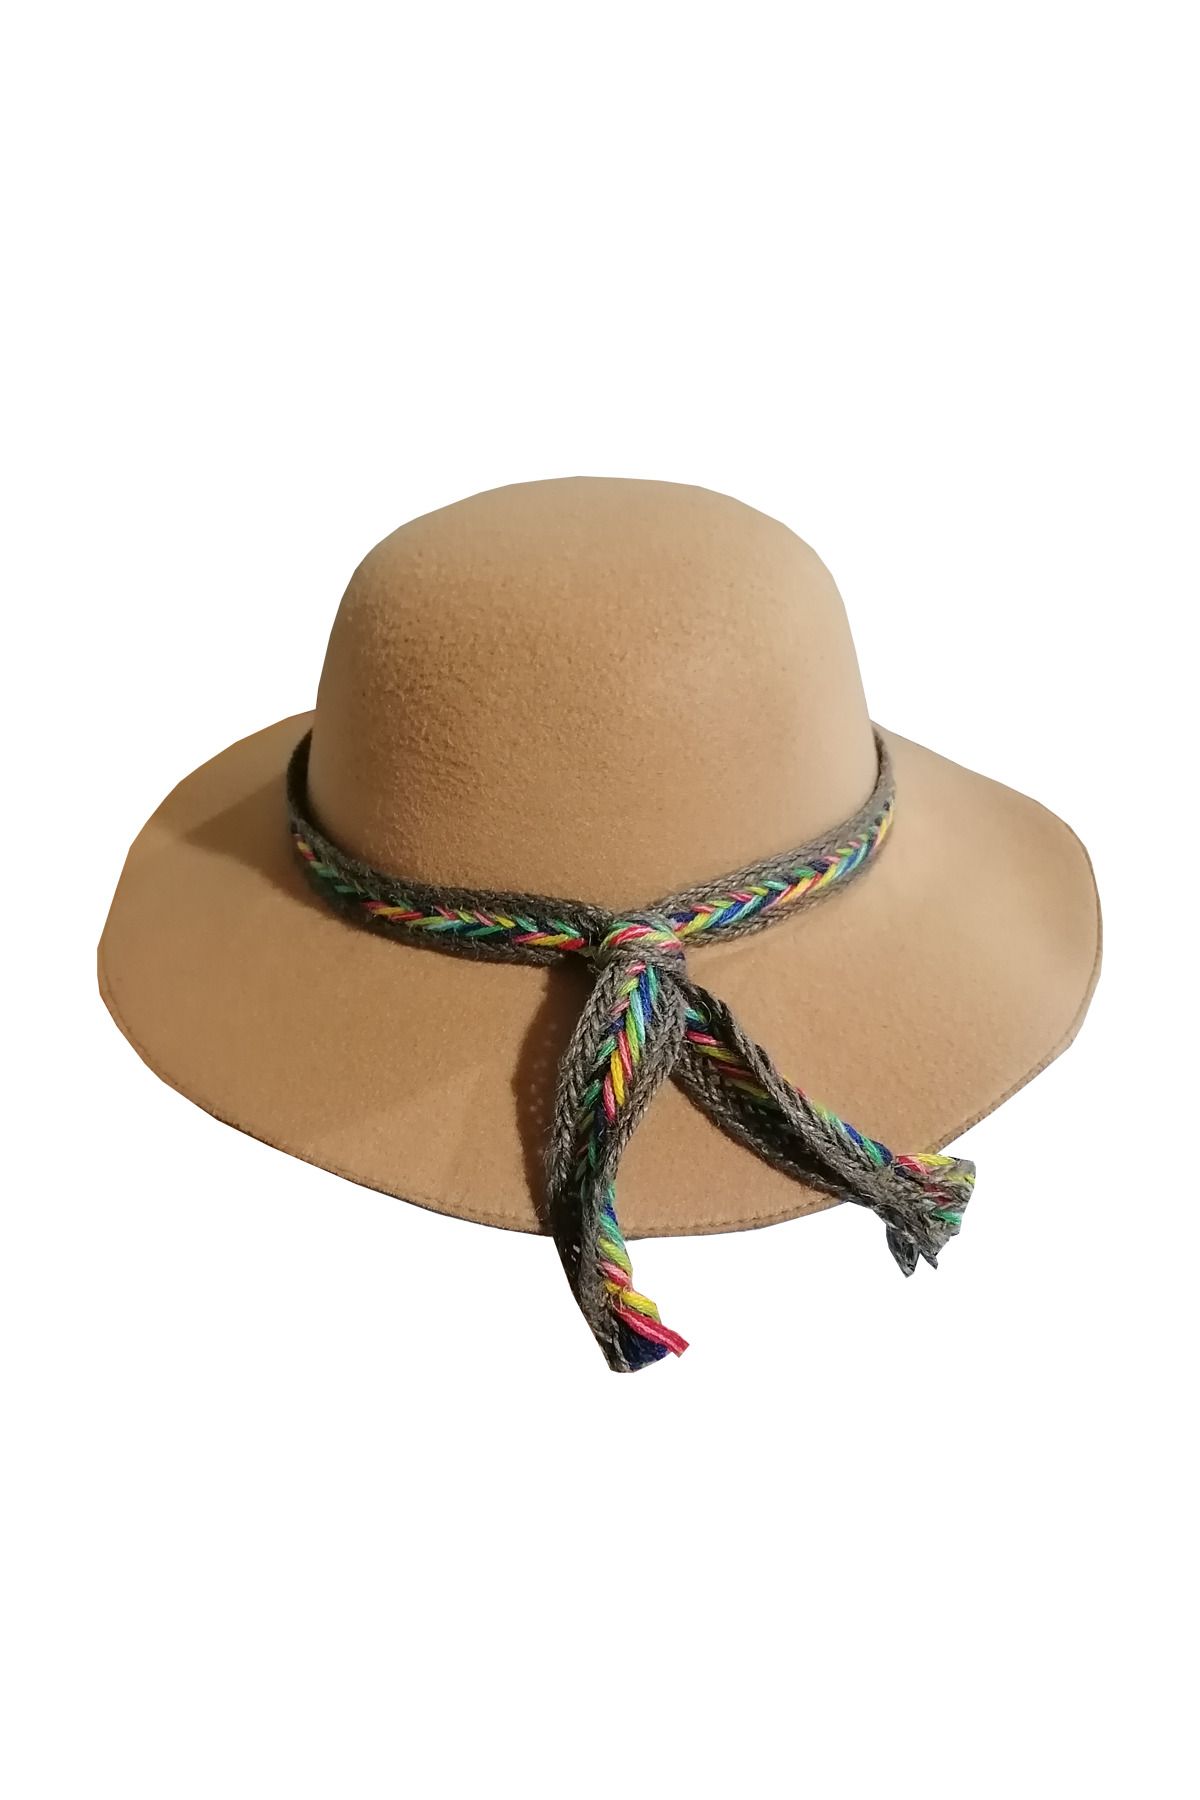 Bay Şapkacı Kız Çocuk Geniş Kenarlı Kaşe Şapka Kahverengi 7168